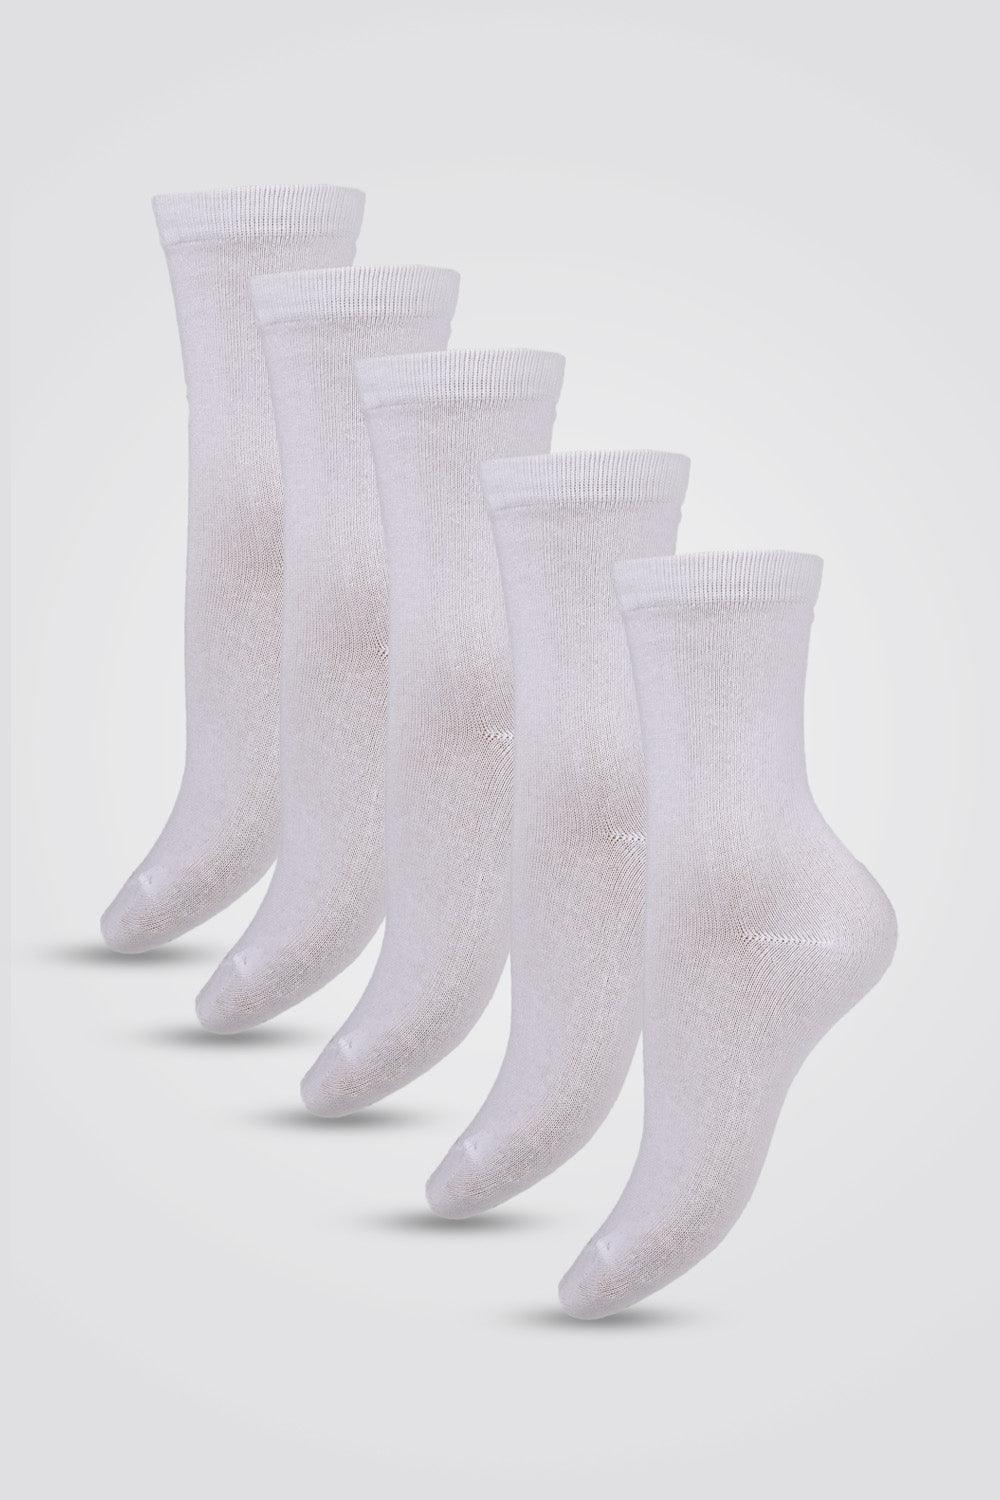 COOL 32 - חמישיית גרביים לנשים בצבע לבן - MASHBIR//365